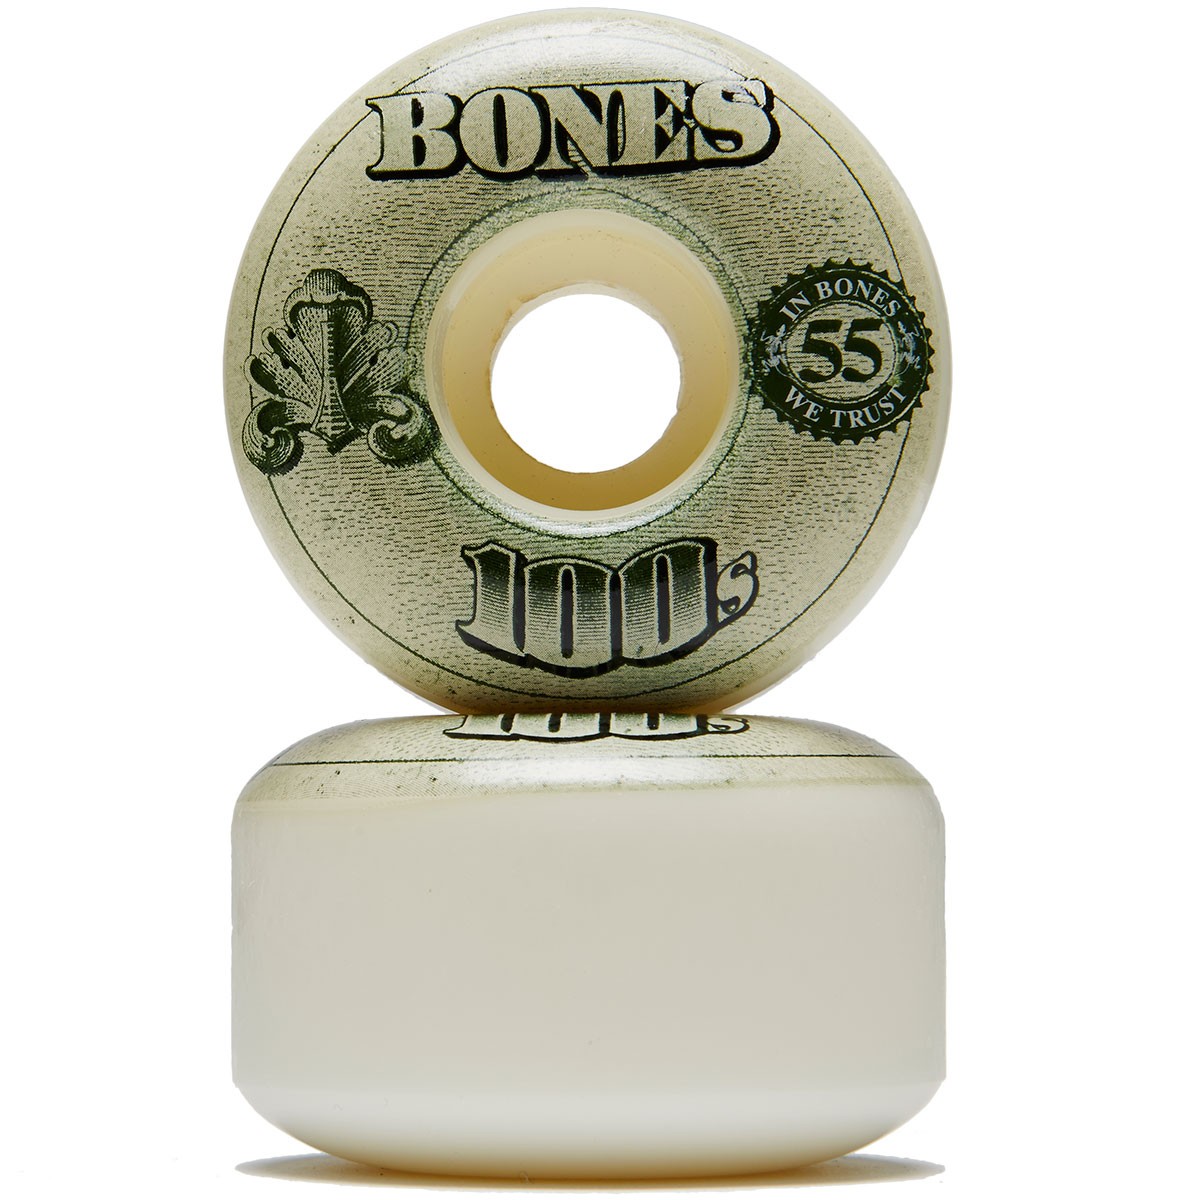 8mm Bones Reds Precision Skate Rated Skateboard Bearings Pack Bundle of 2 Items 52mm Bones Wheels 100s OG V4#13 Black/Red Skateboard Wheels 100a with Bones Bearings 8 